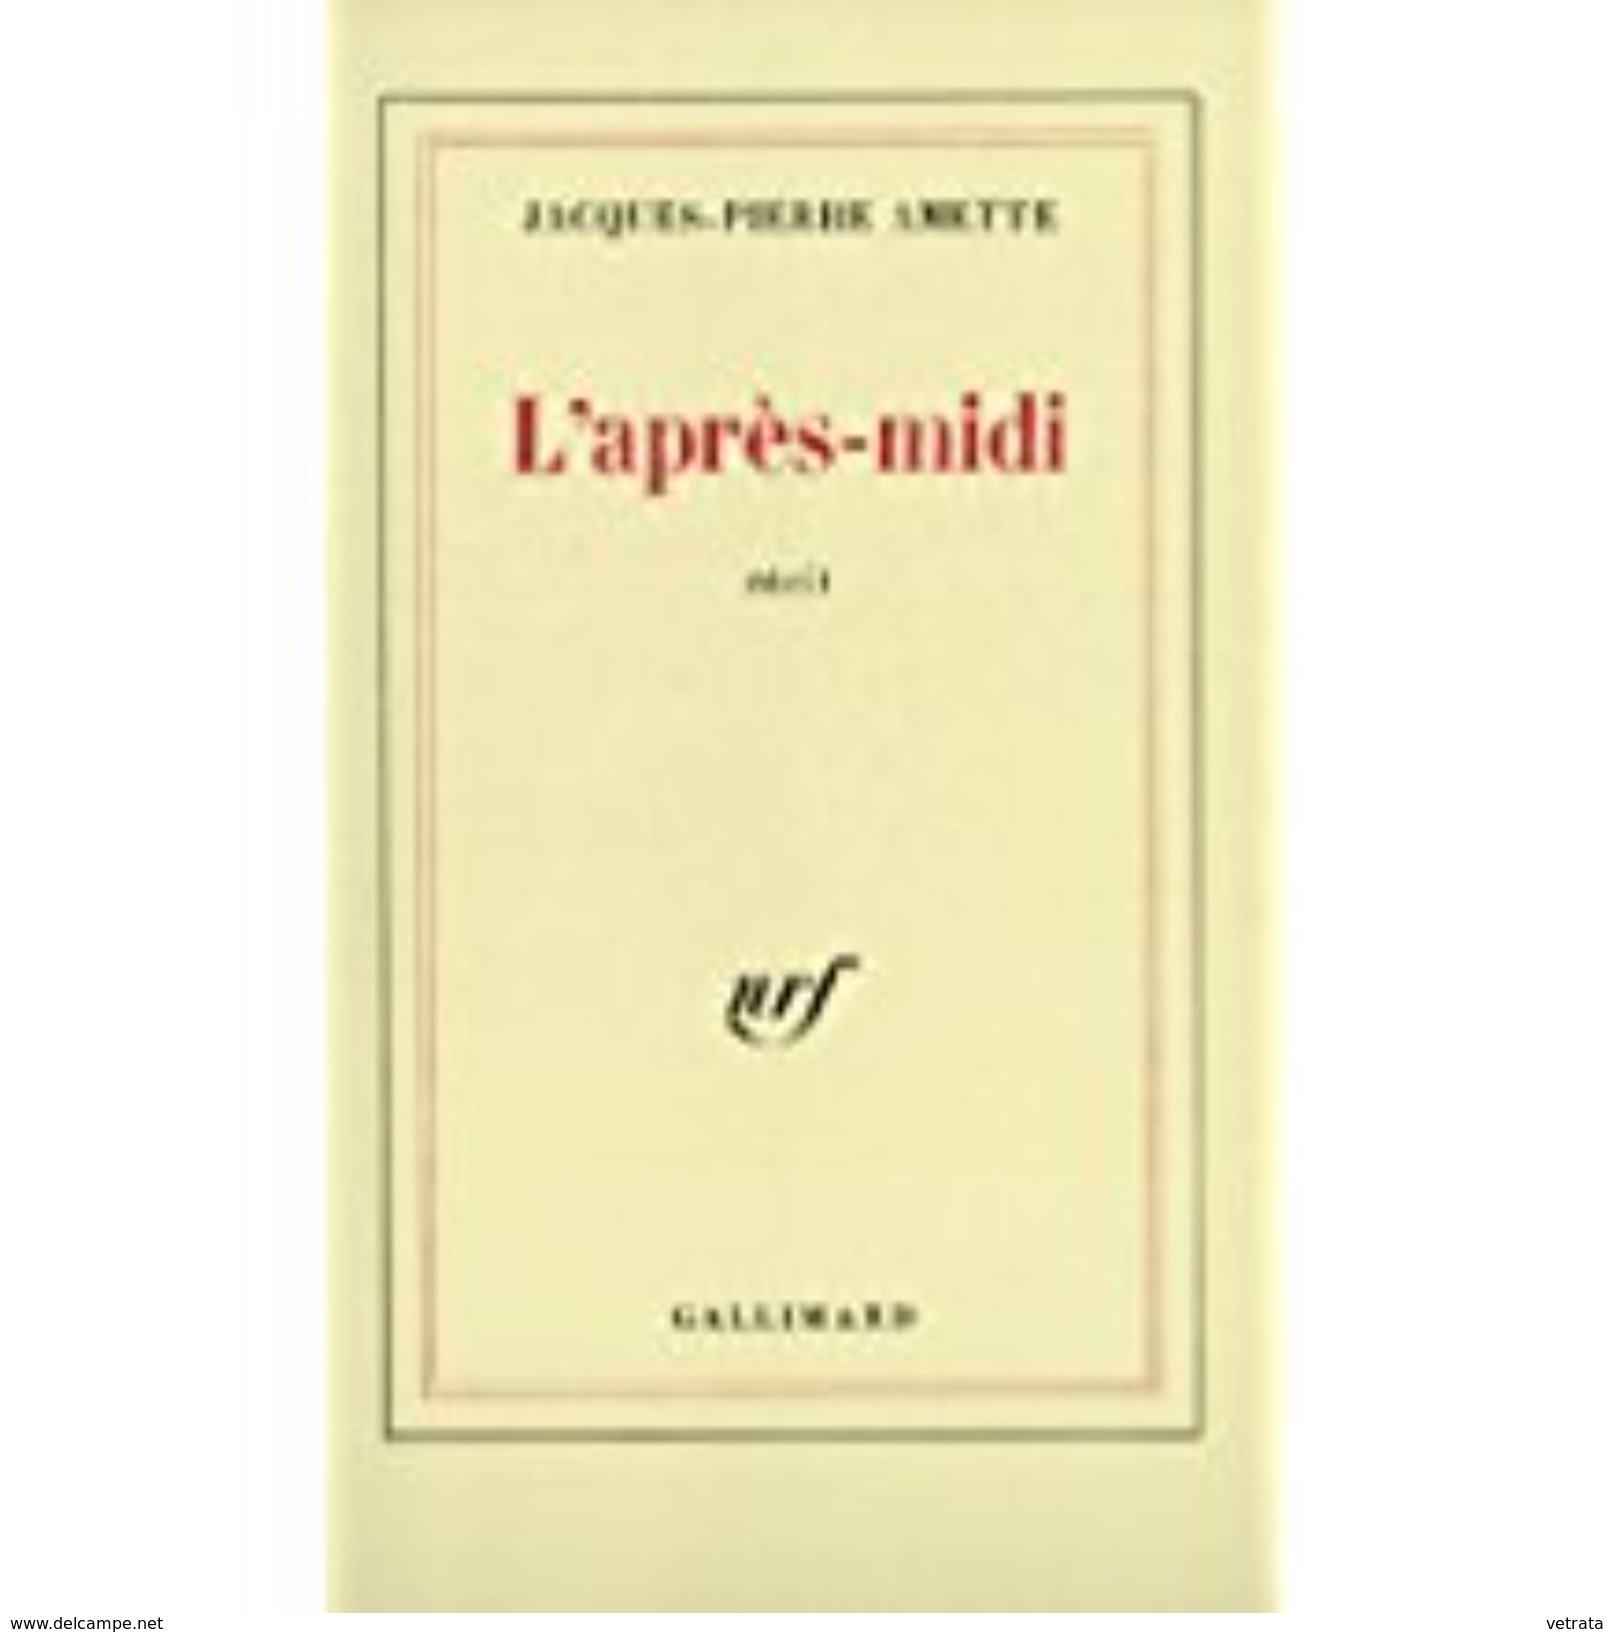 2 Livres De Jacques-Pierre Amette : L'Après-Midi (Gallimard) - La Peau Du Monde (Seuil) - Paquete De Libros